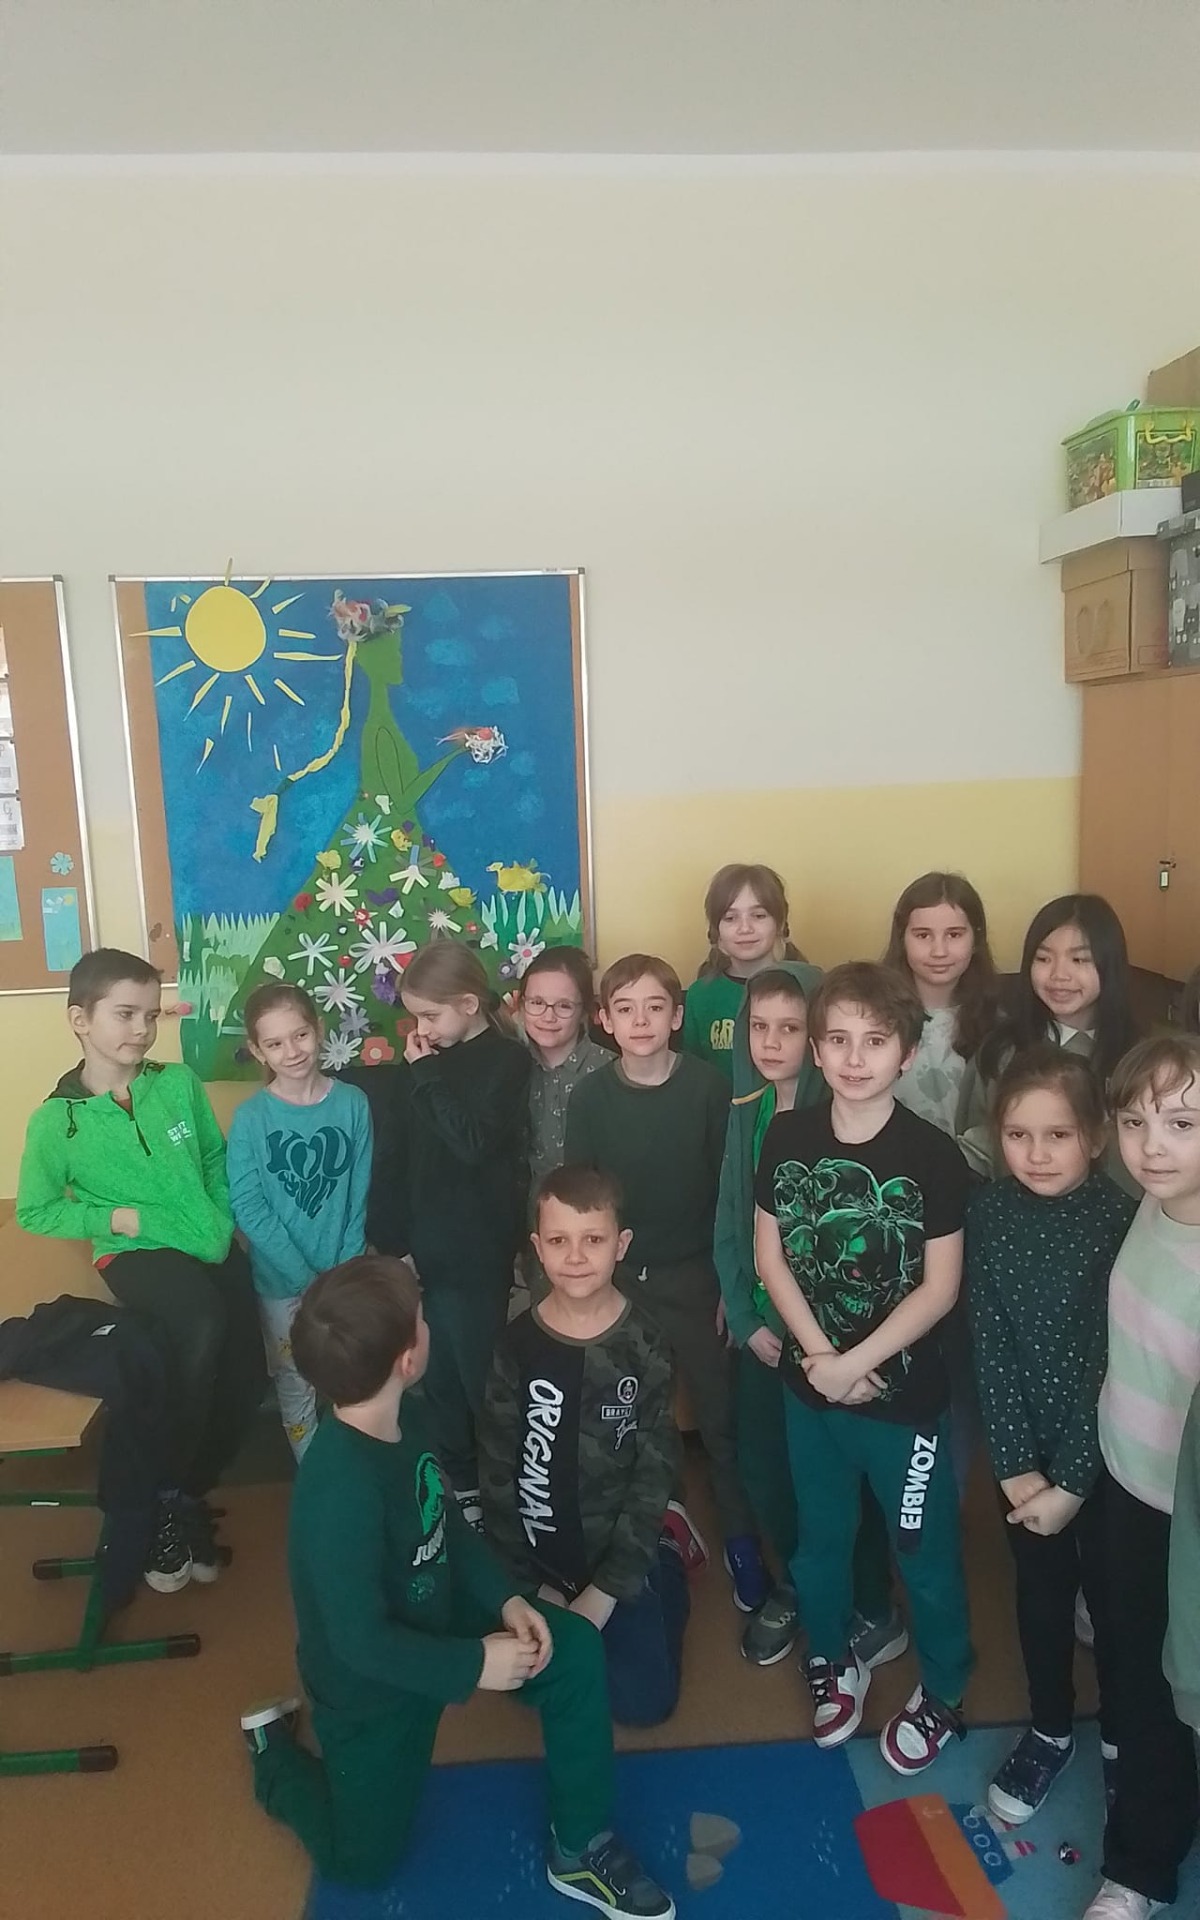 Uczniowie w klasie pozują do zdjęcia, każdy ma zielony element ubioru z okazji pierwszego dnia wiosny. W tle plakat z błękitnym niebem i słońcem i Panią Wiosną.